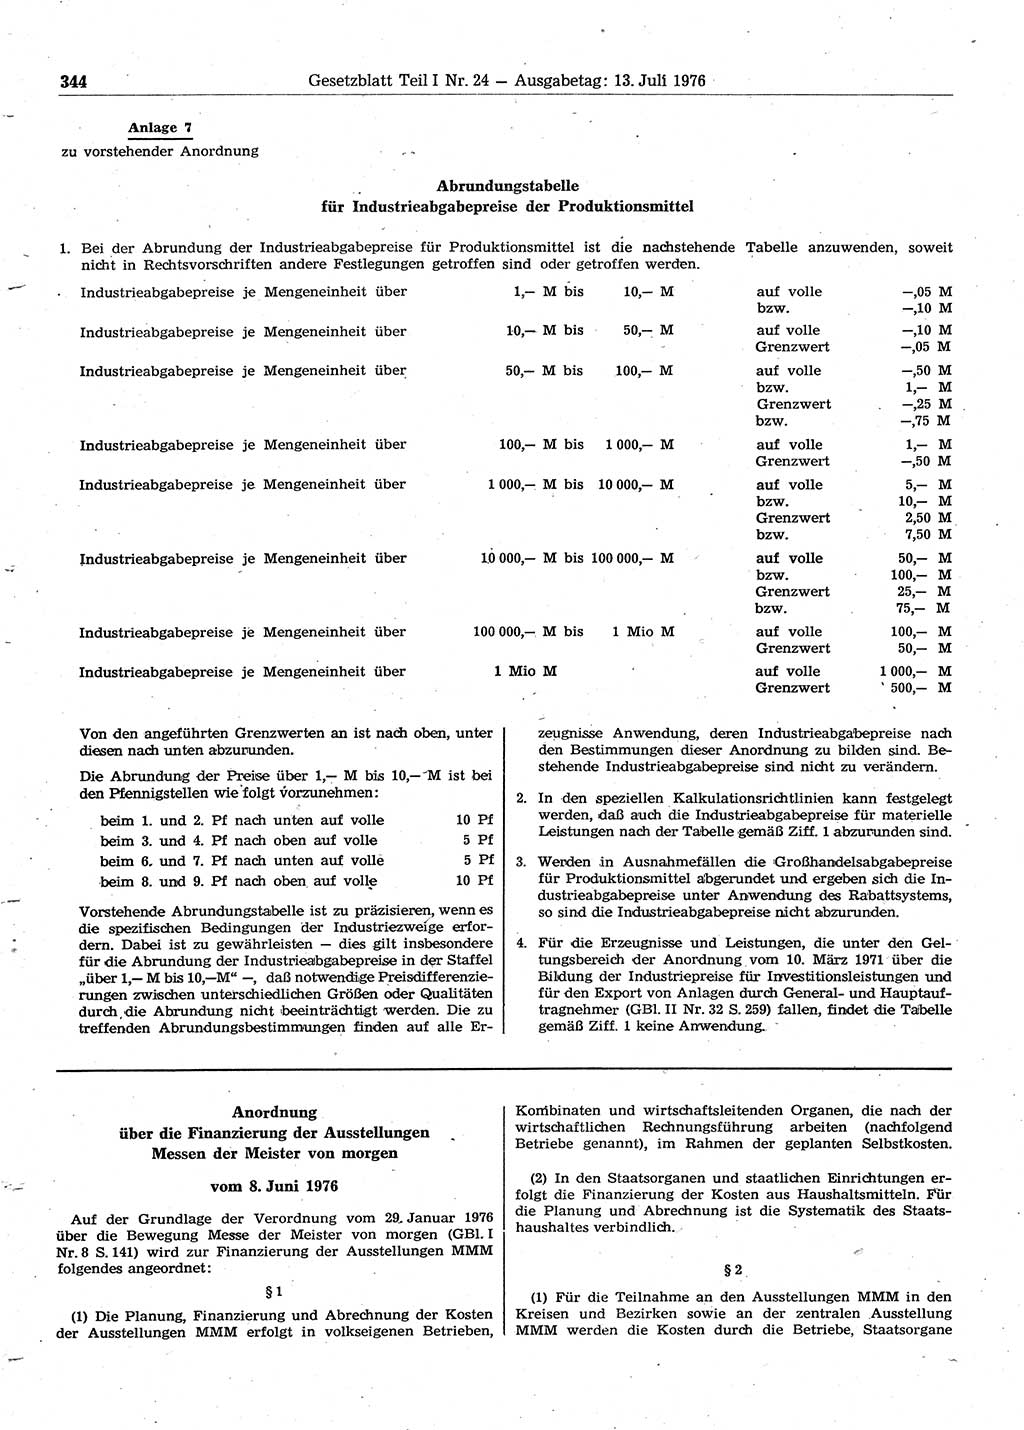 Gesetzblatt (GBl.) der Deutschen Demokratischen Republik (DDR) Teil Ⅰ 1976, Seite 344 (GBl. DDR Ⅰ 1976, S. 344)